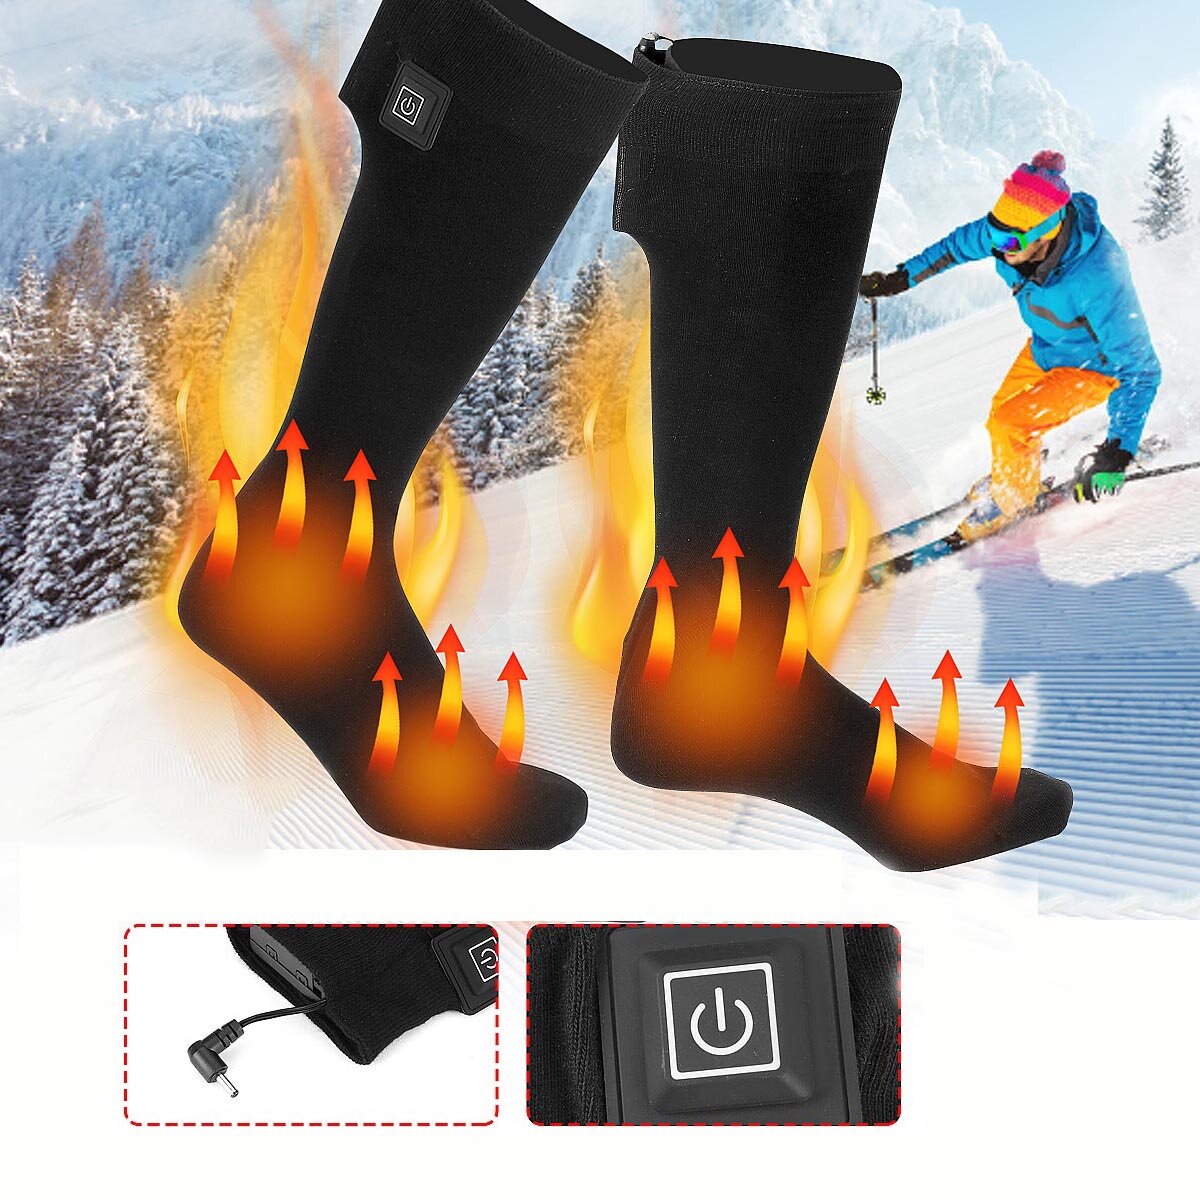 Podgrzewane skarpety Rechargeable Electric Heated Socks za $19.99 / ~79zł